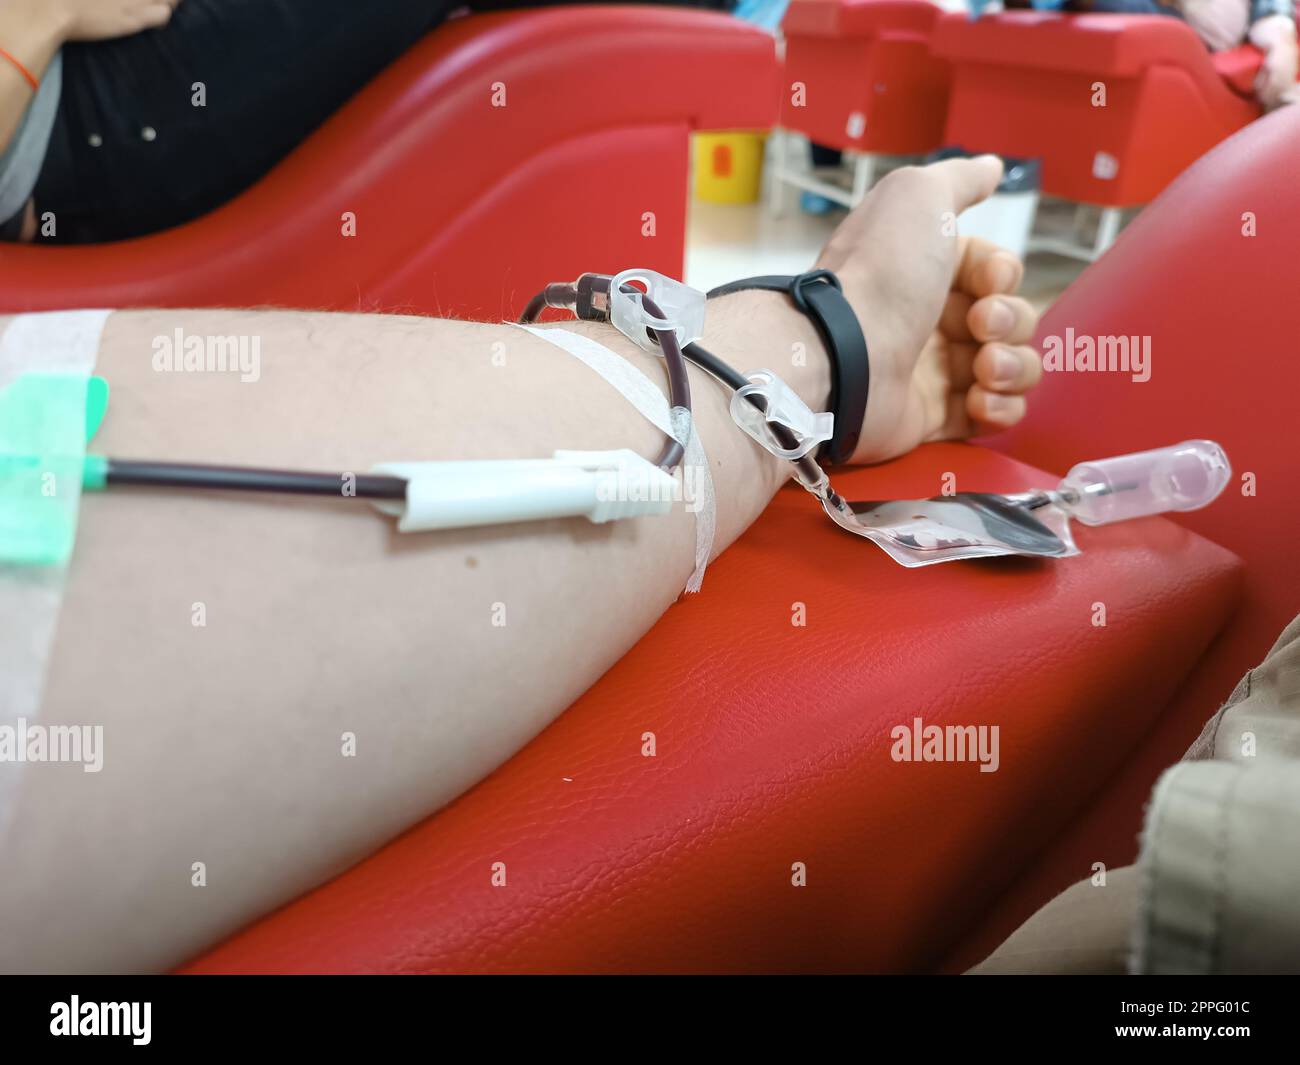 Blutspende, Bluttransfusion, Check spezifiziert, Fasten, medizinische Versorgung. Linker Arm eines jungen Kaukasier-Mannes mit Blut- oder Plasmaspendelausrüstung im Spenderzentrum. Blutspendekonzept. Plasmaspendekonzept. Konzept „Leben retten“. Stockfoto